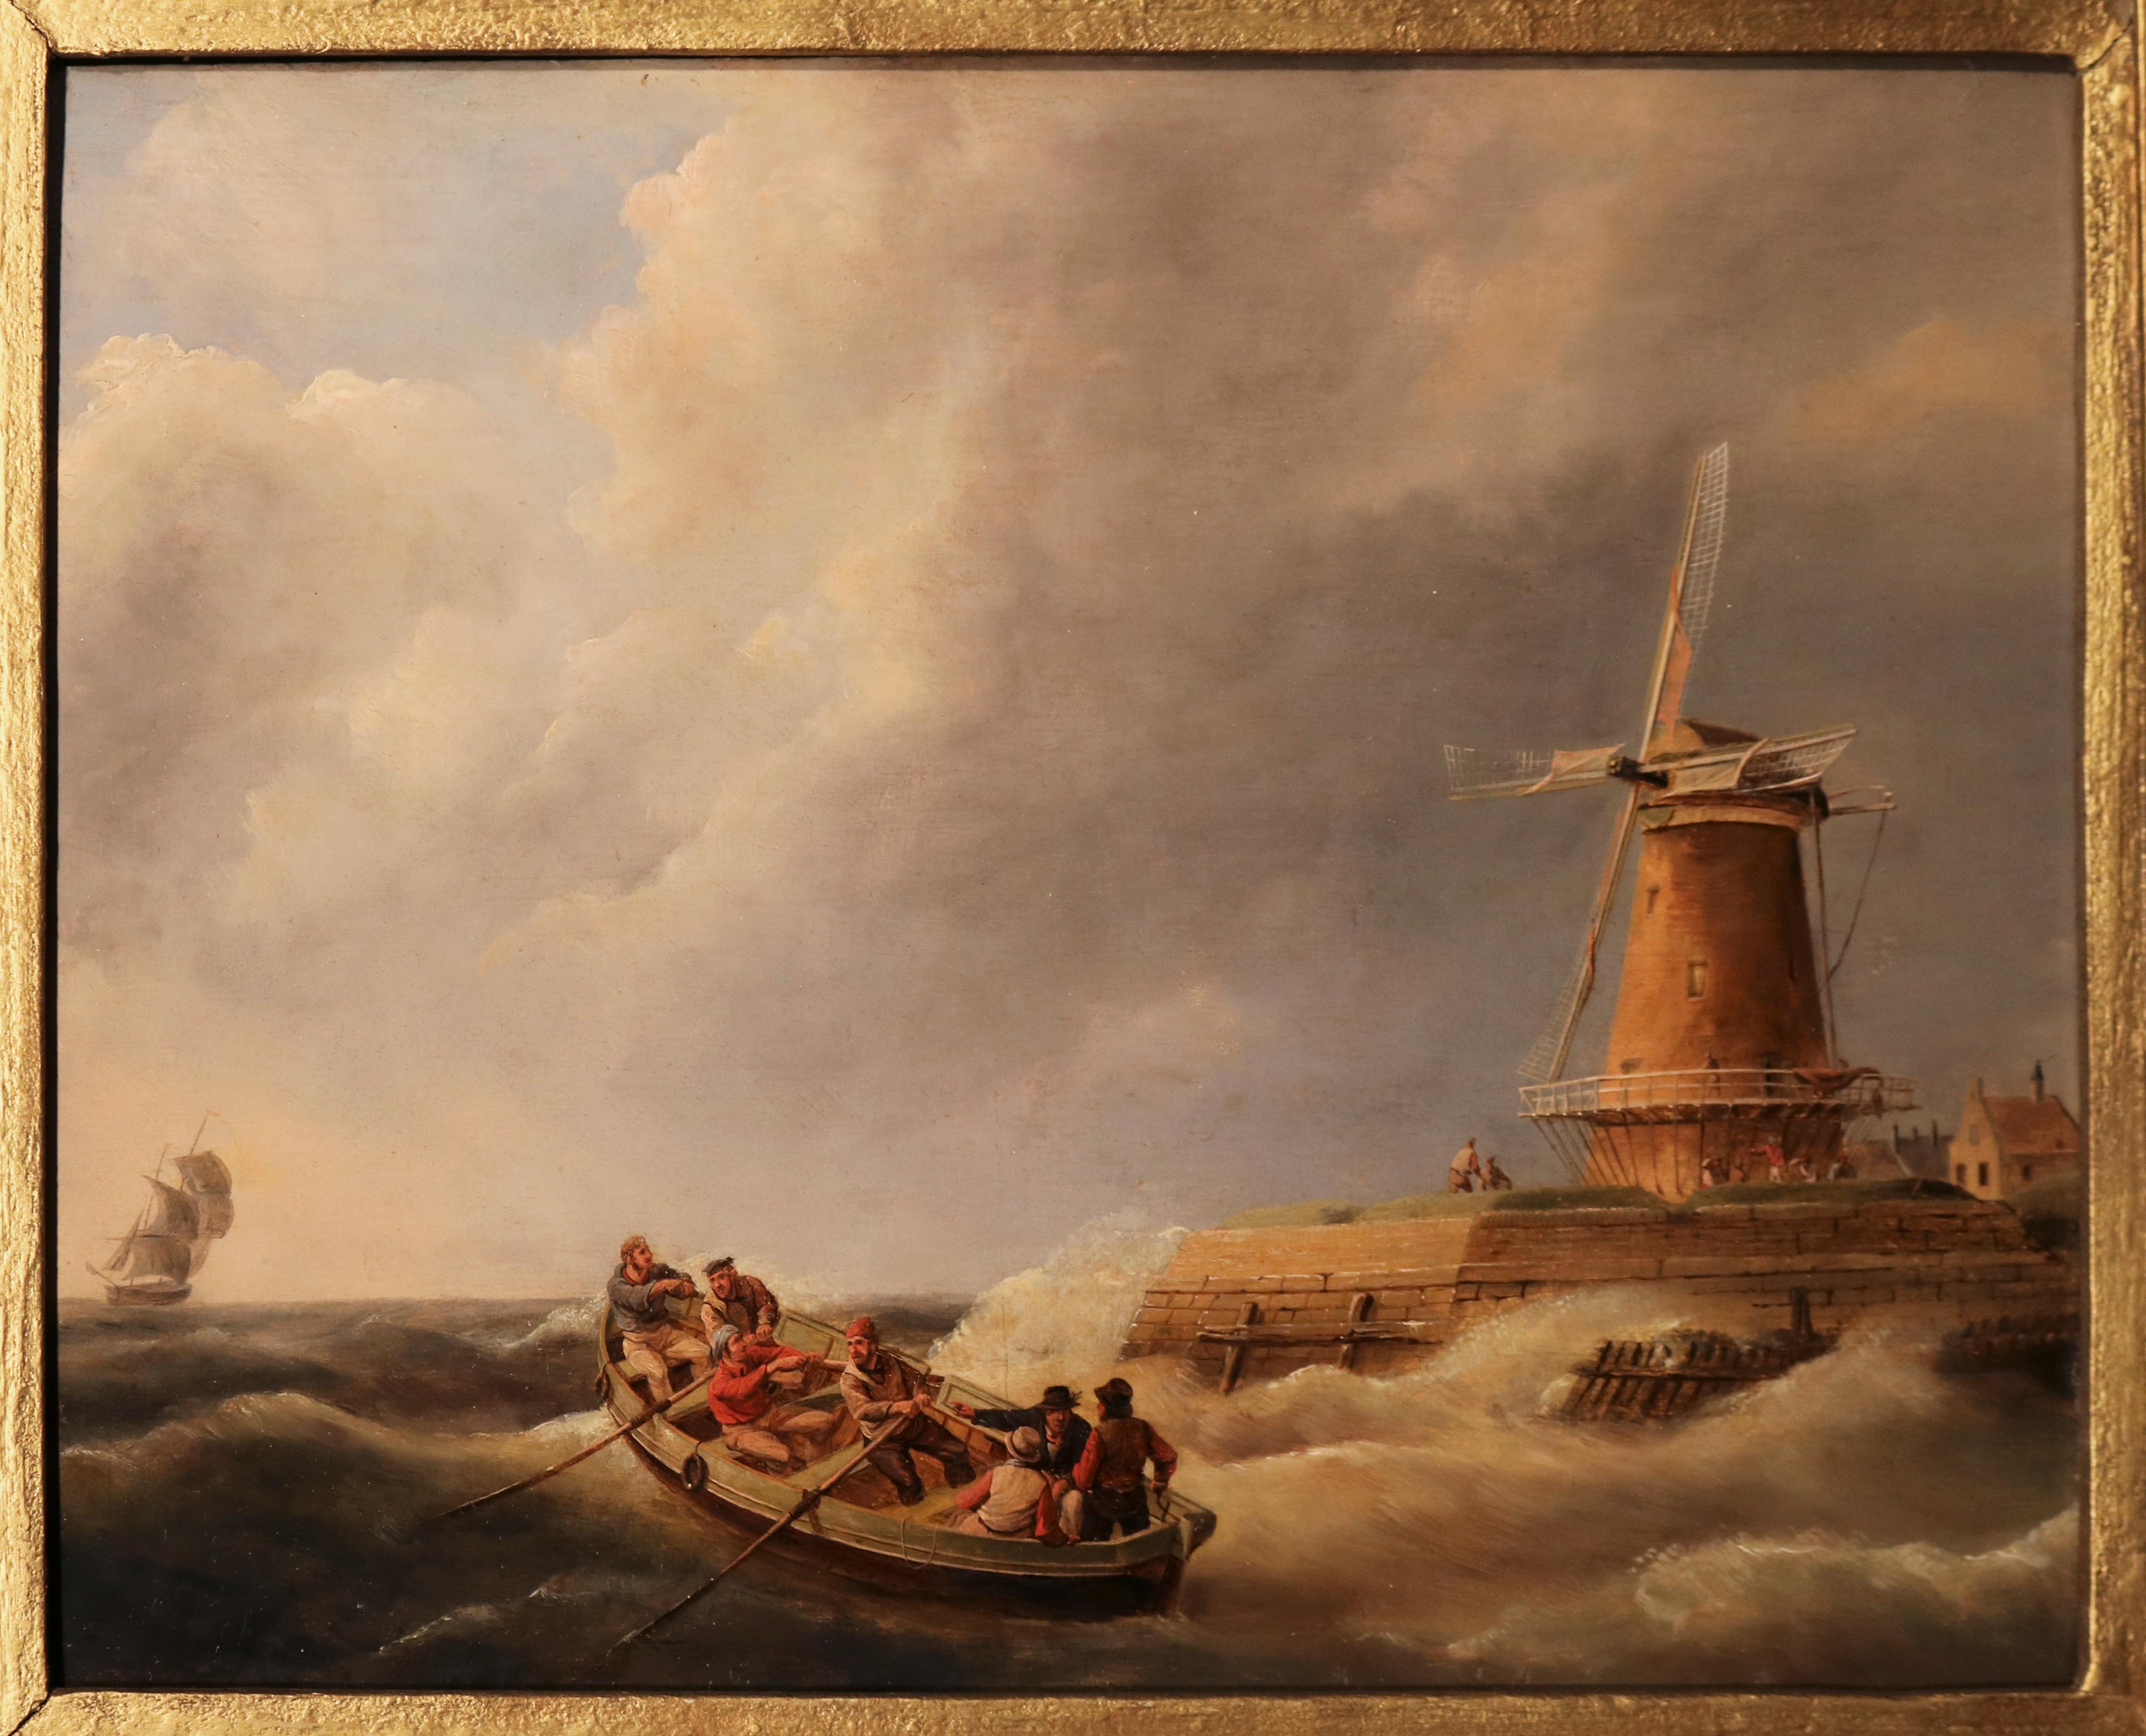 Ein Ölgemälde aus dem frühen 19. Jahrhundert, das Fischer in stürmischer See mit einer Windmühle zeigt, in einem zeitgenössischen geschnitzten Rahmen aus Goldholz. Niederländische Schule. Unterschrieben: J.C. Schotel.